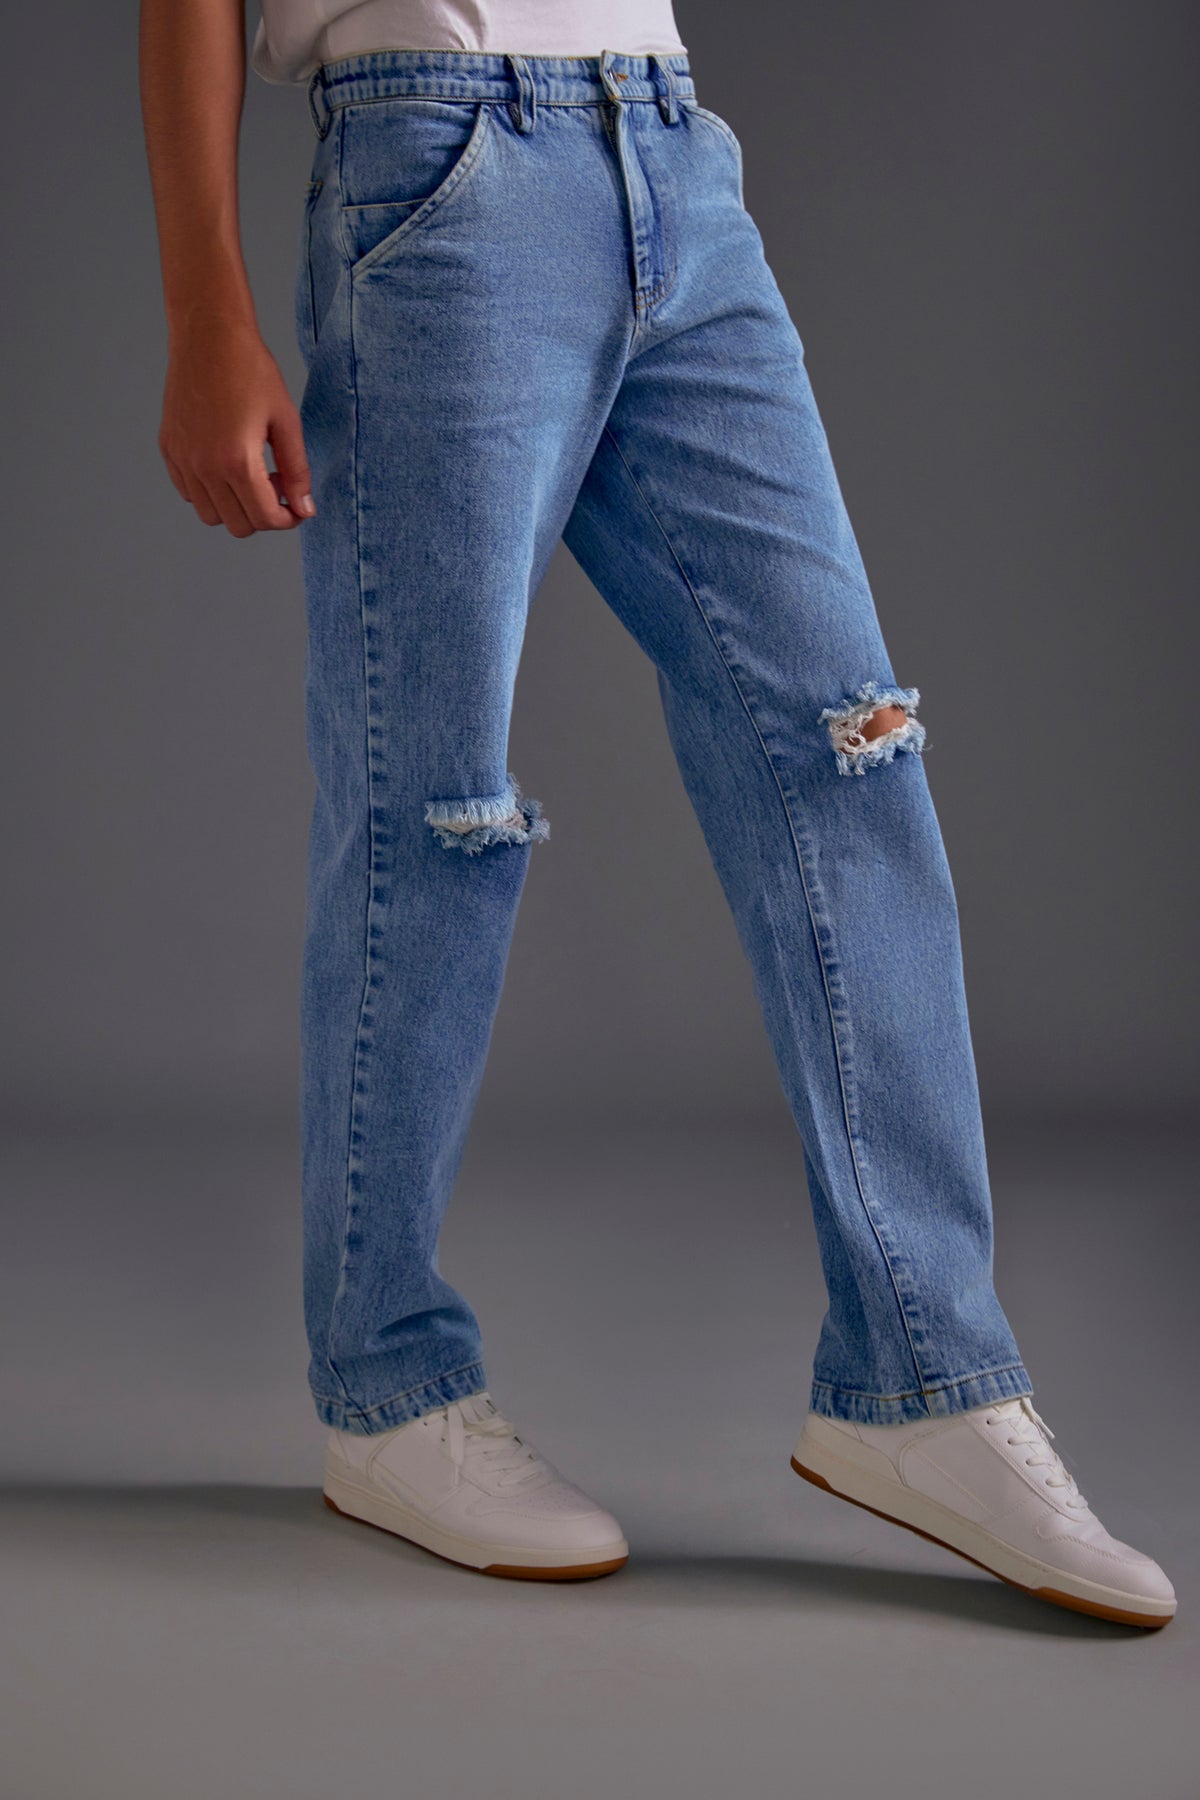 Embellished Denim Jacket and Knee-cut Jeans Set